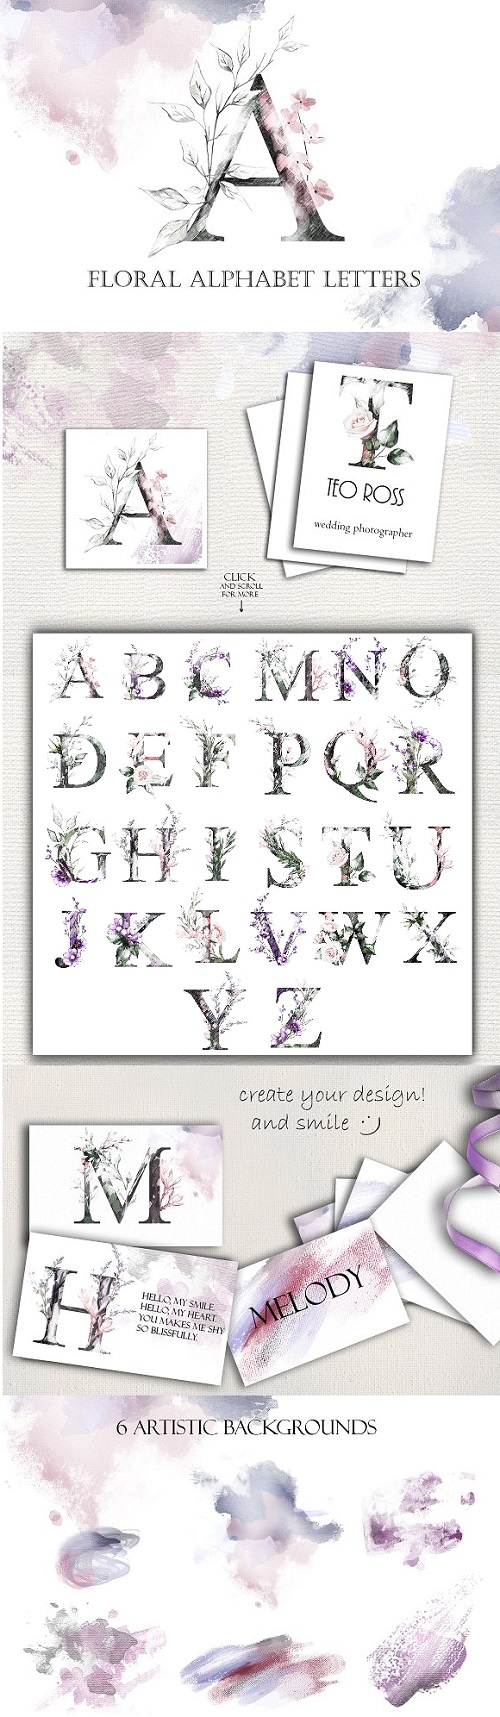 Floral Alphabet Letters - 2200289